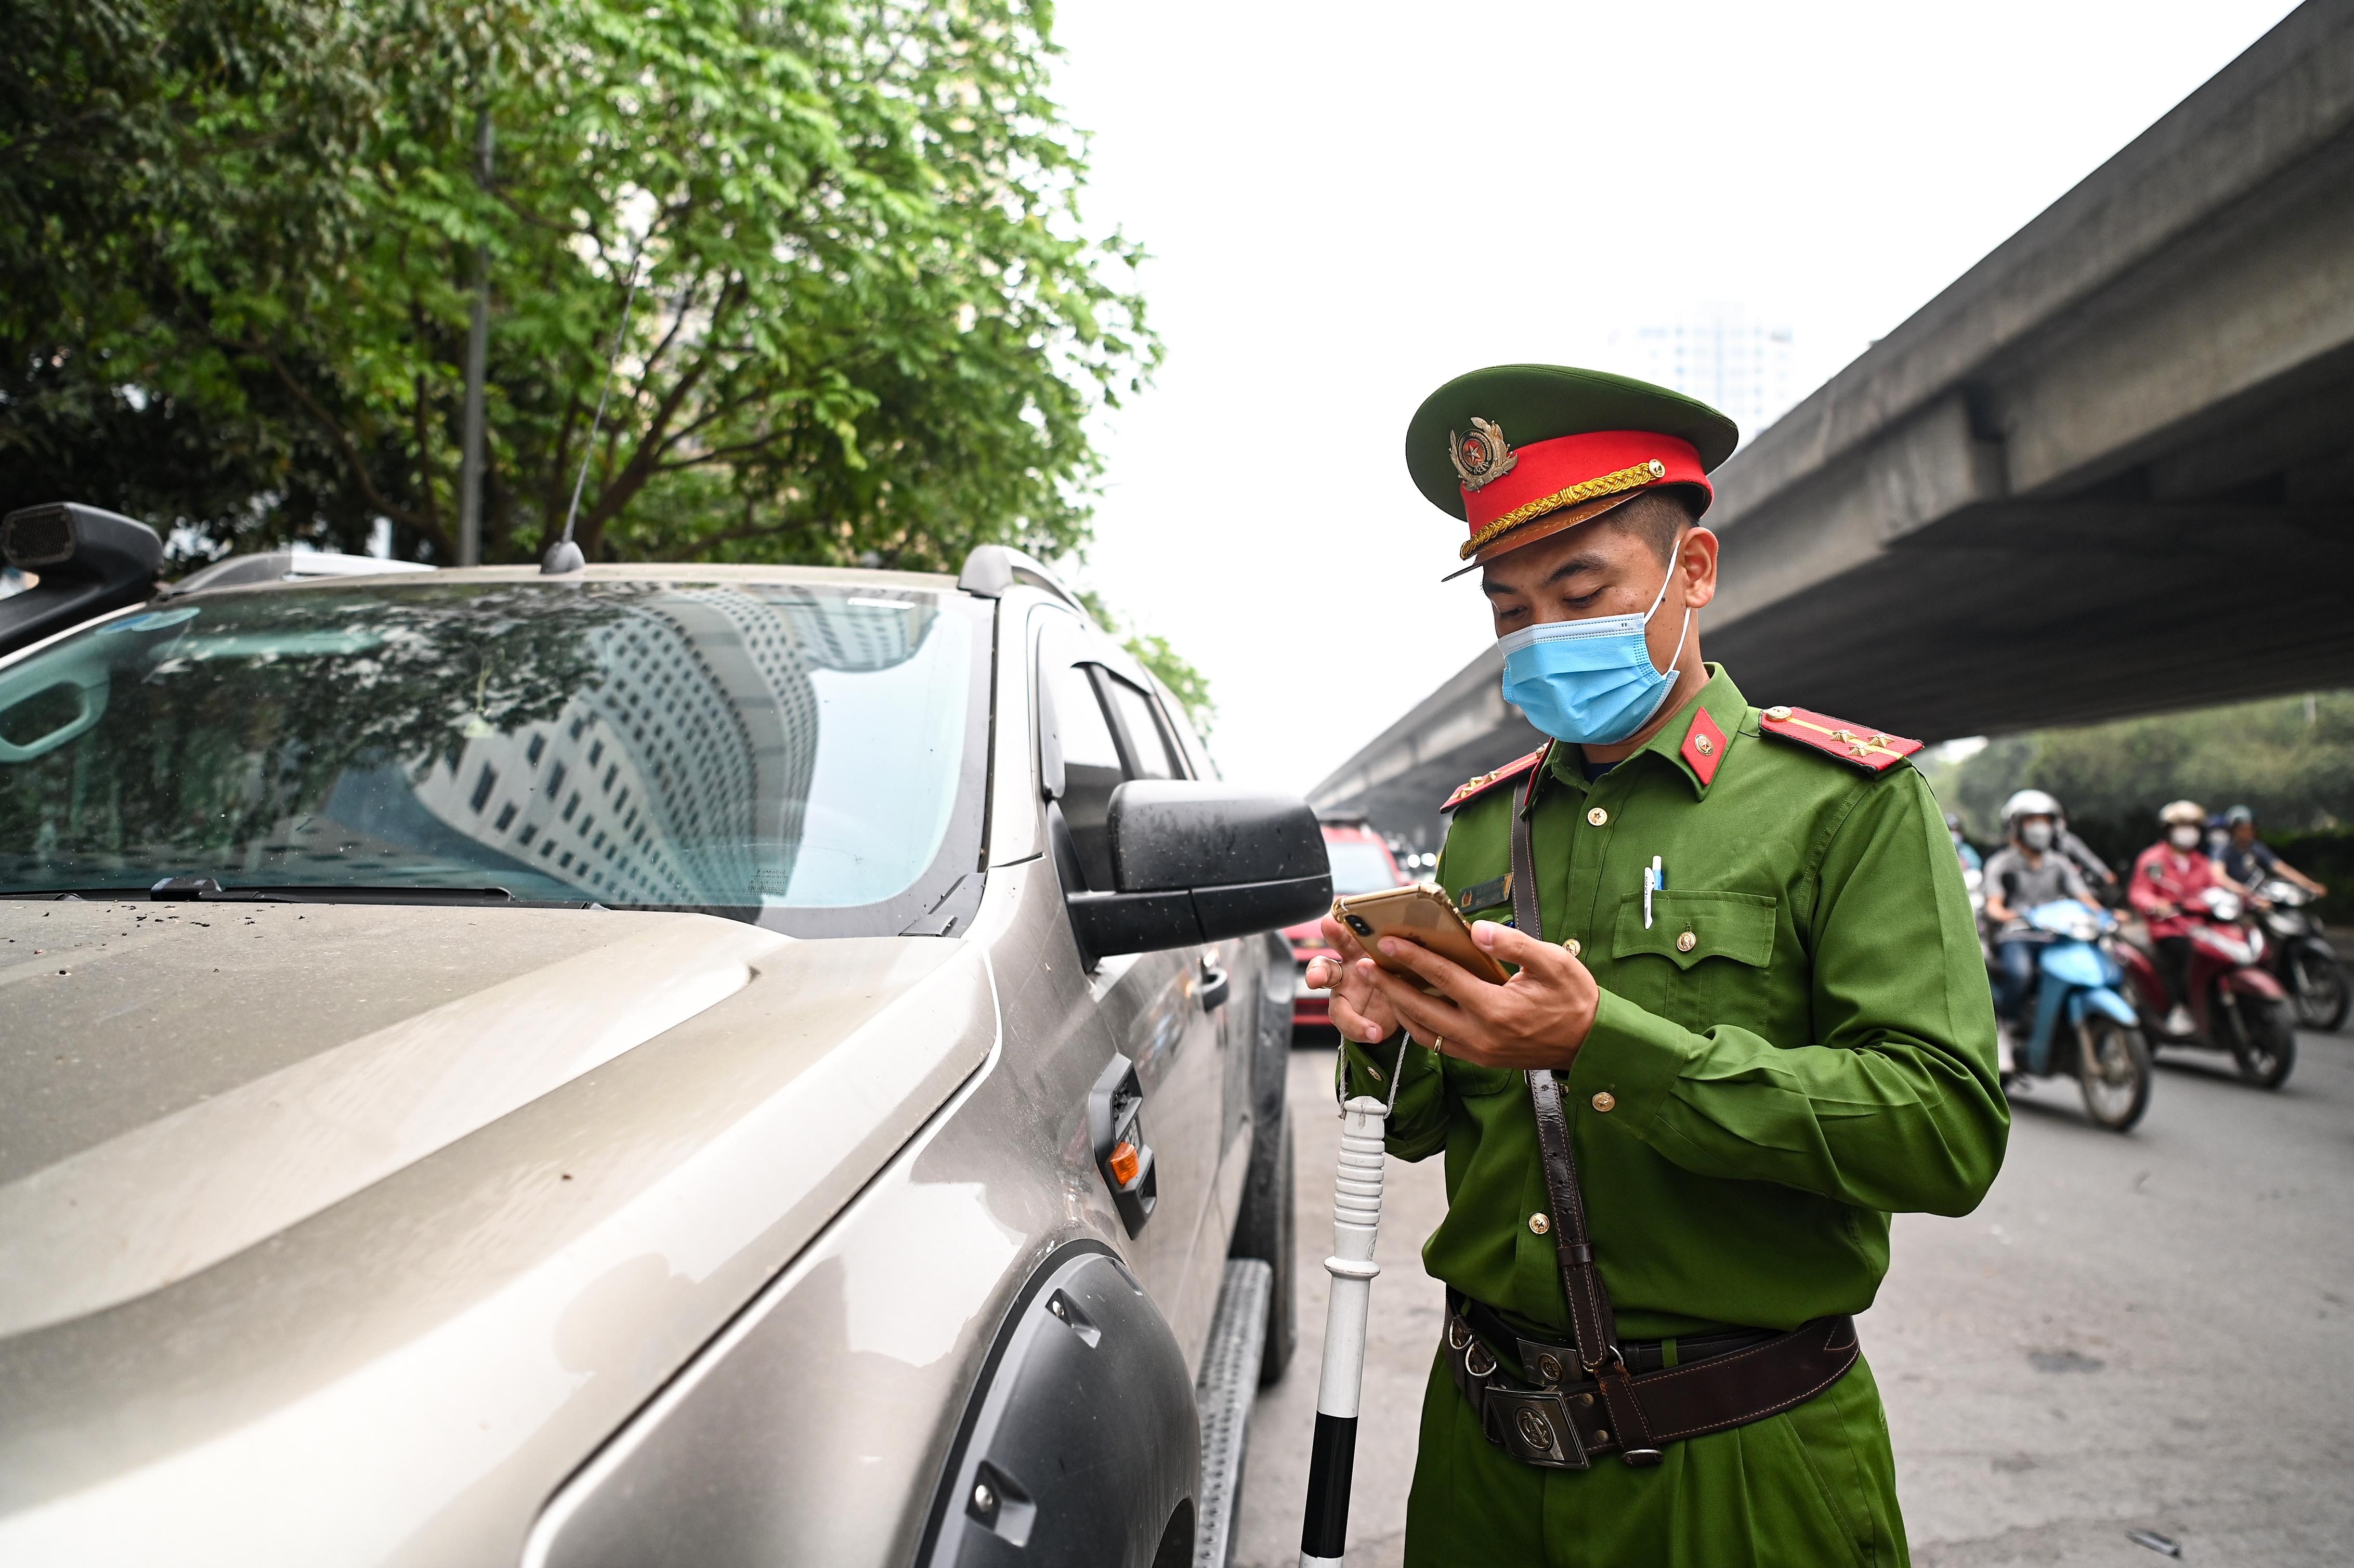 Đỗ xe ở lòng đường Hà Nội, tài xế xếp hàng dài chờ bị xử phạt - ảnh 11